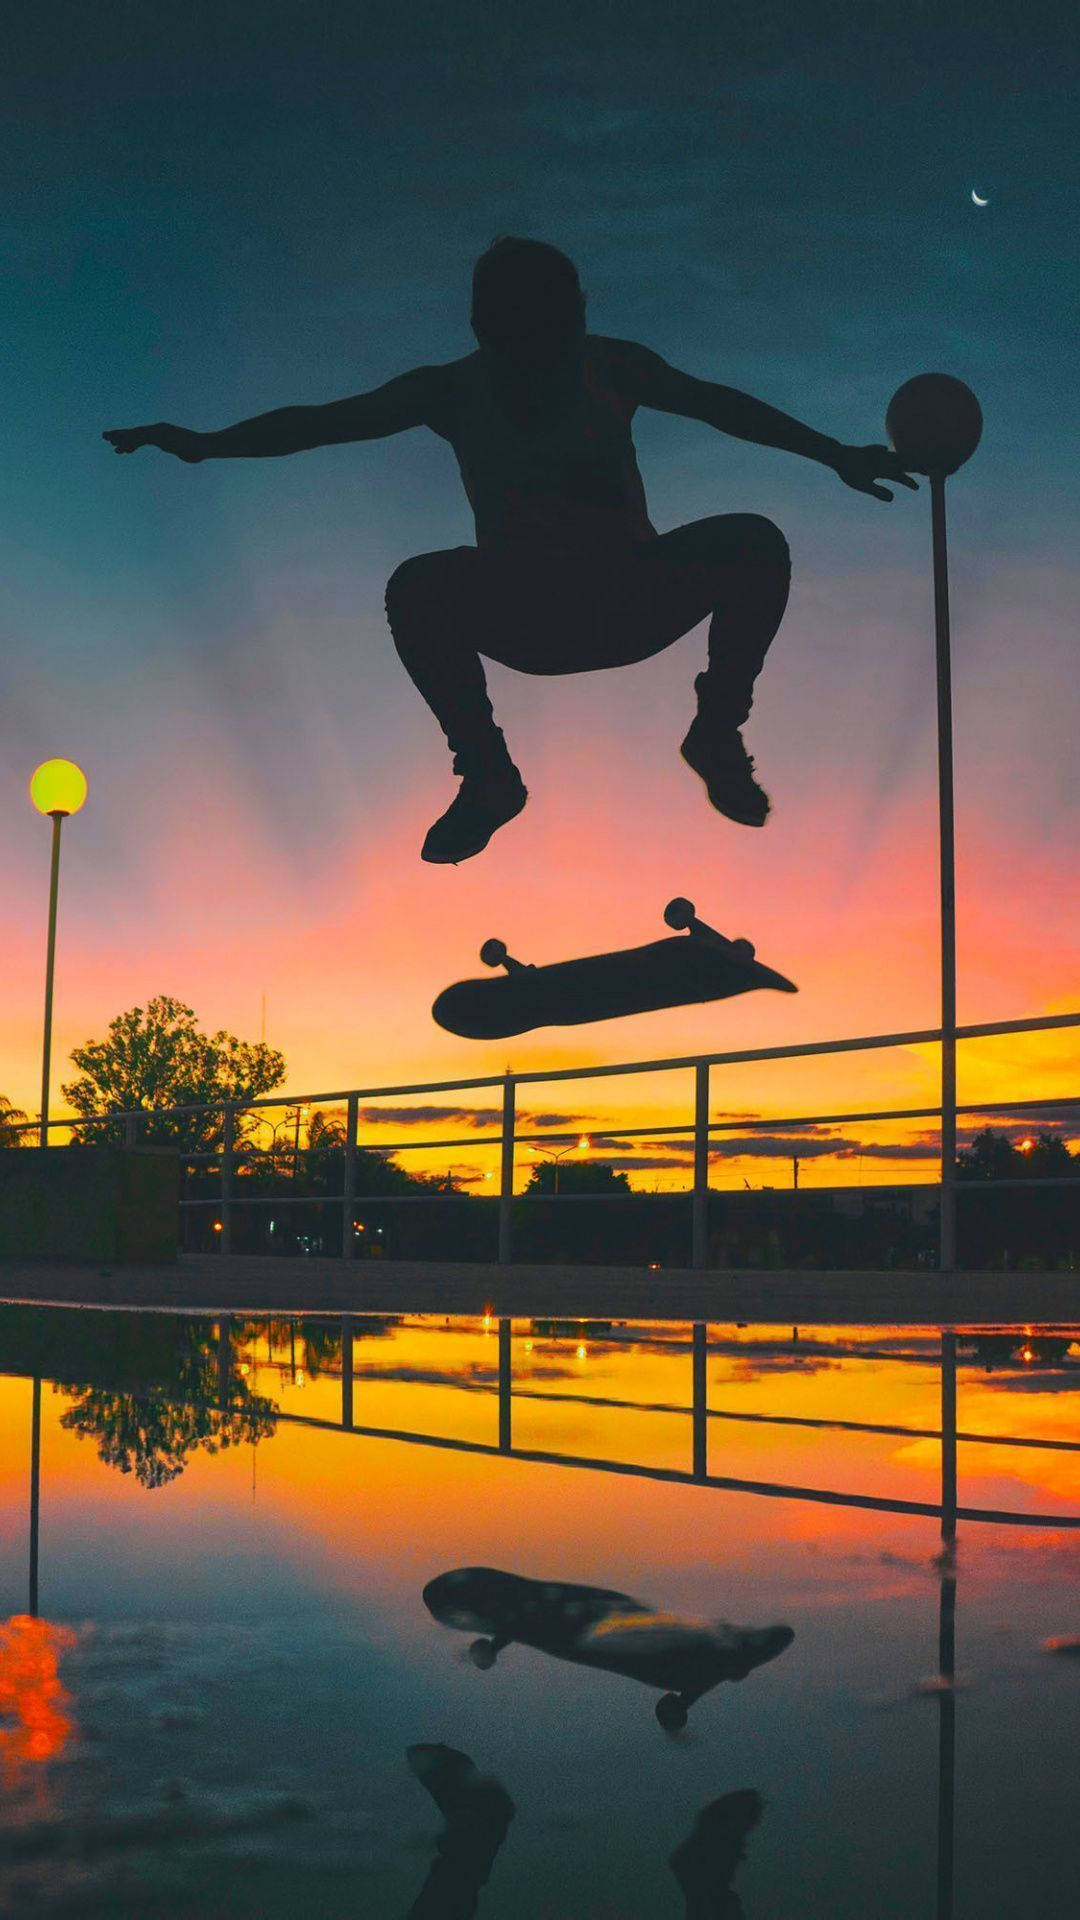 Aesthetic Skateboard Silhouette Man